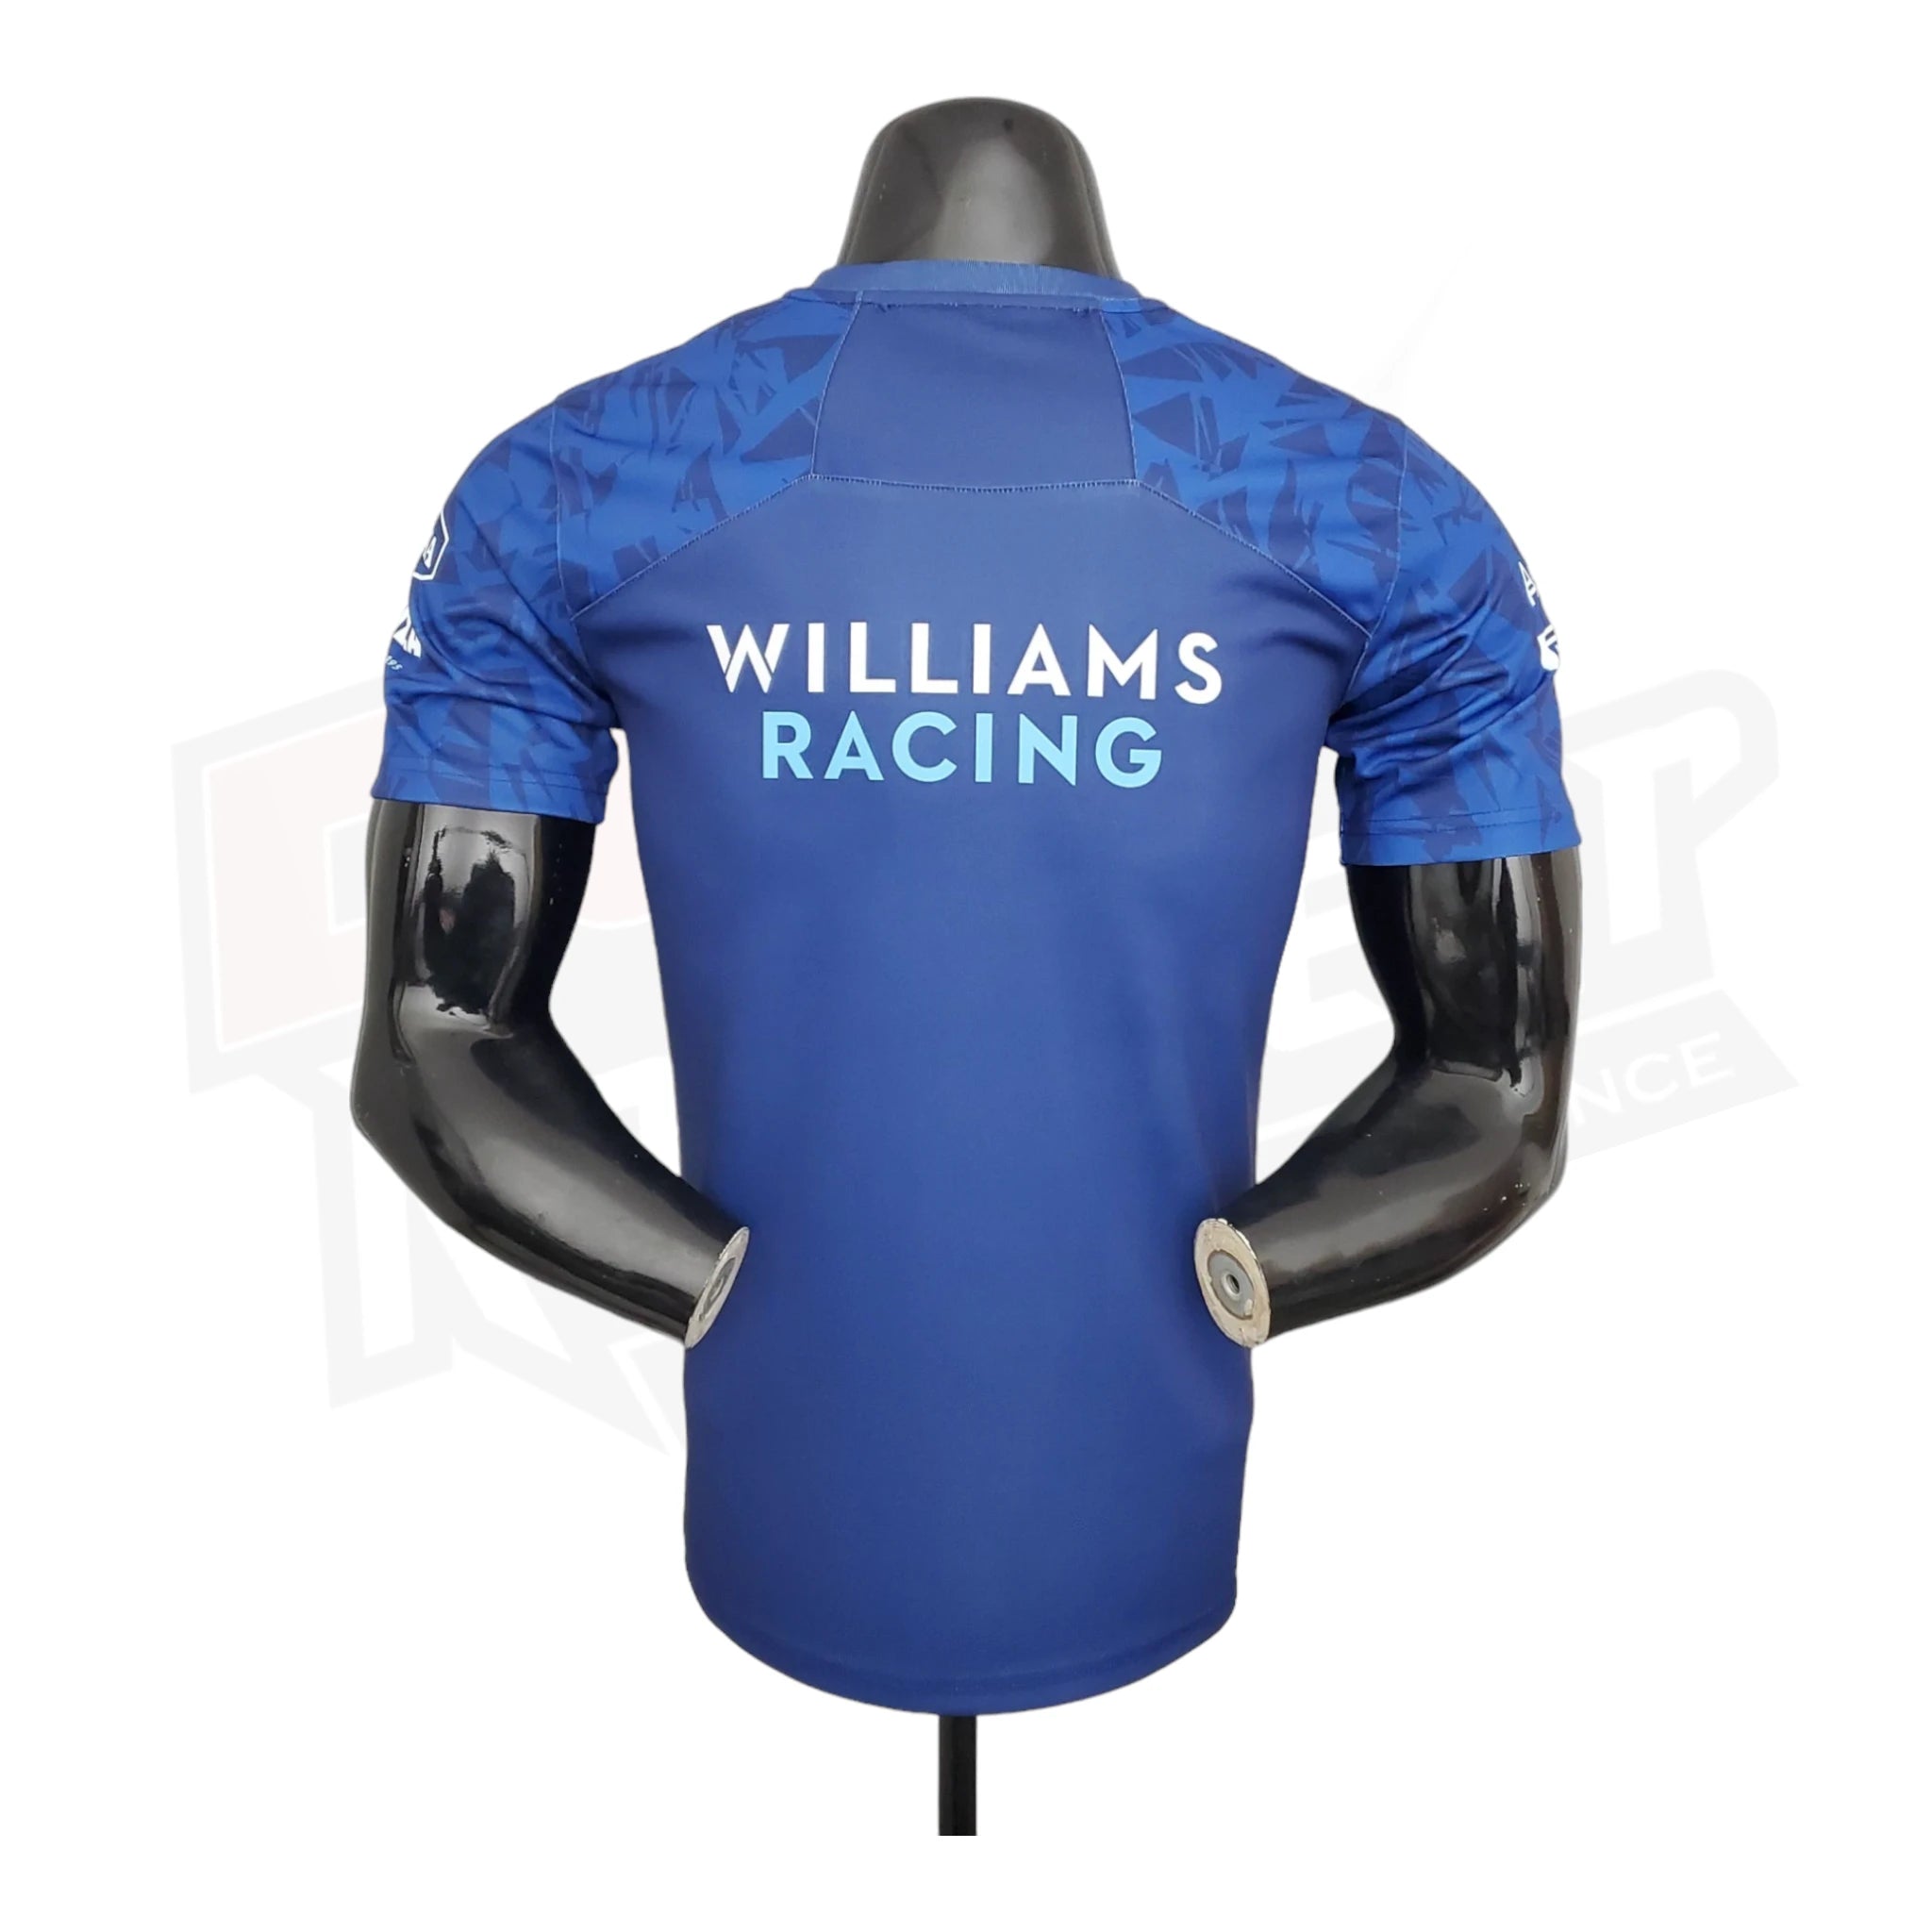 WilliamsRacingFormulaOneT-Shirt_2_36dd783a-3e6f-4c13-a563-e29157b93967.webp